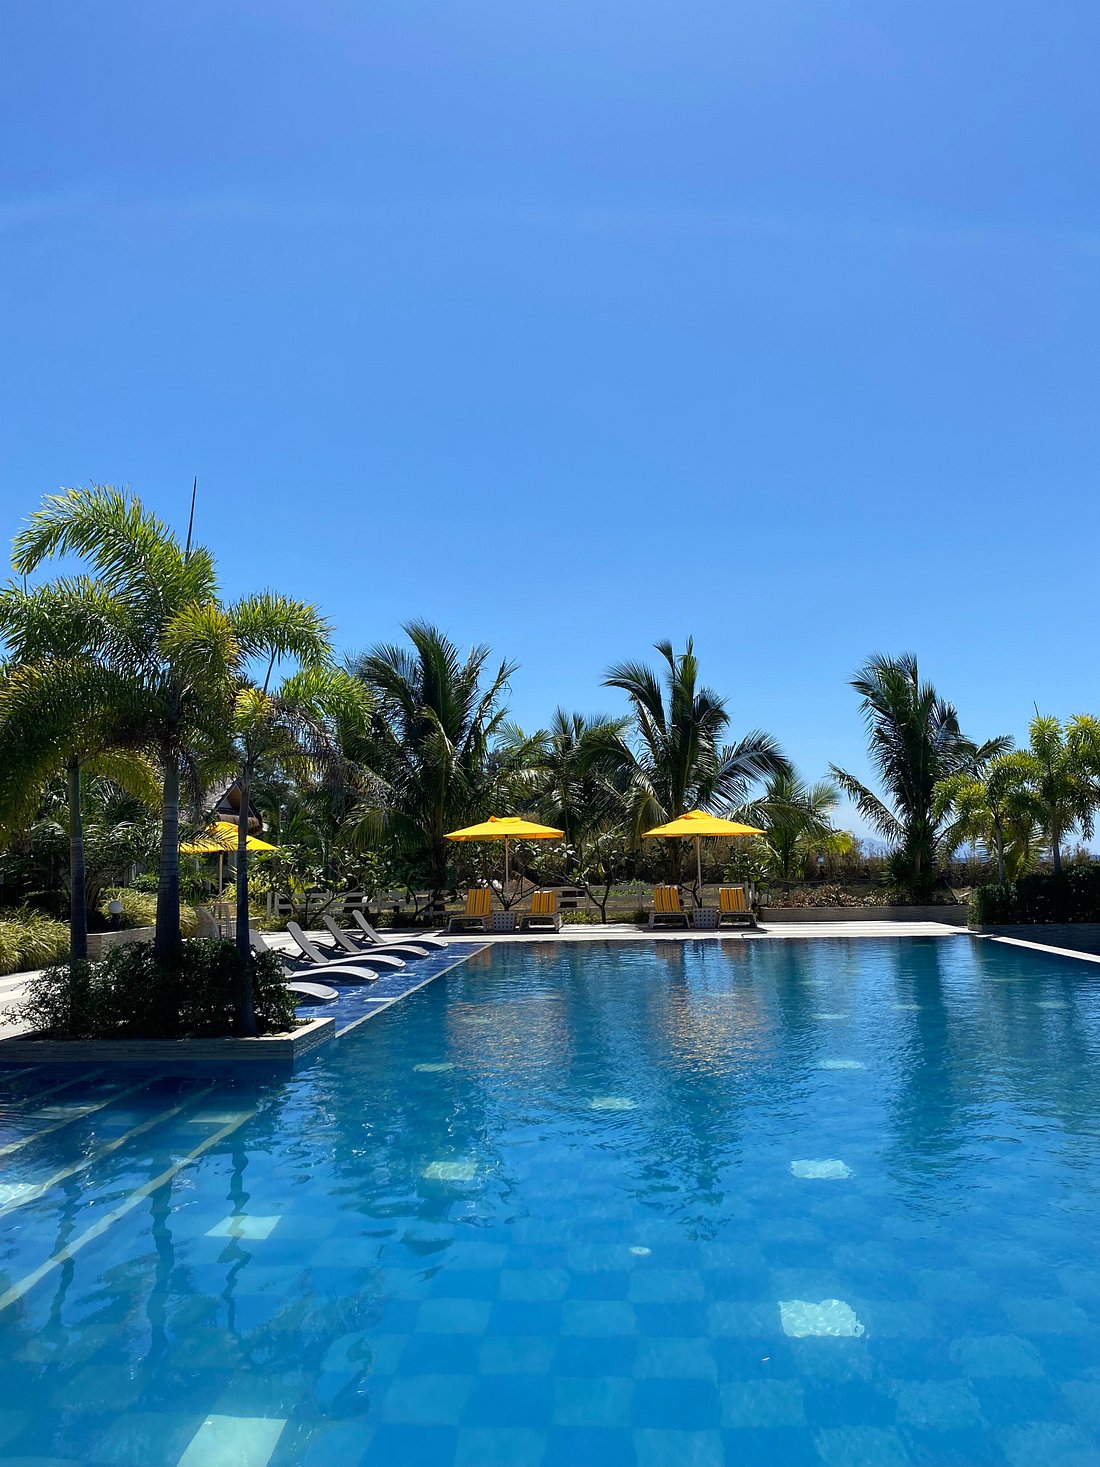 Haya Nature Resort Pool Pictures And Reviews Tripadvisor 9906